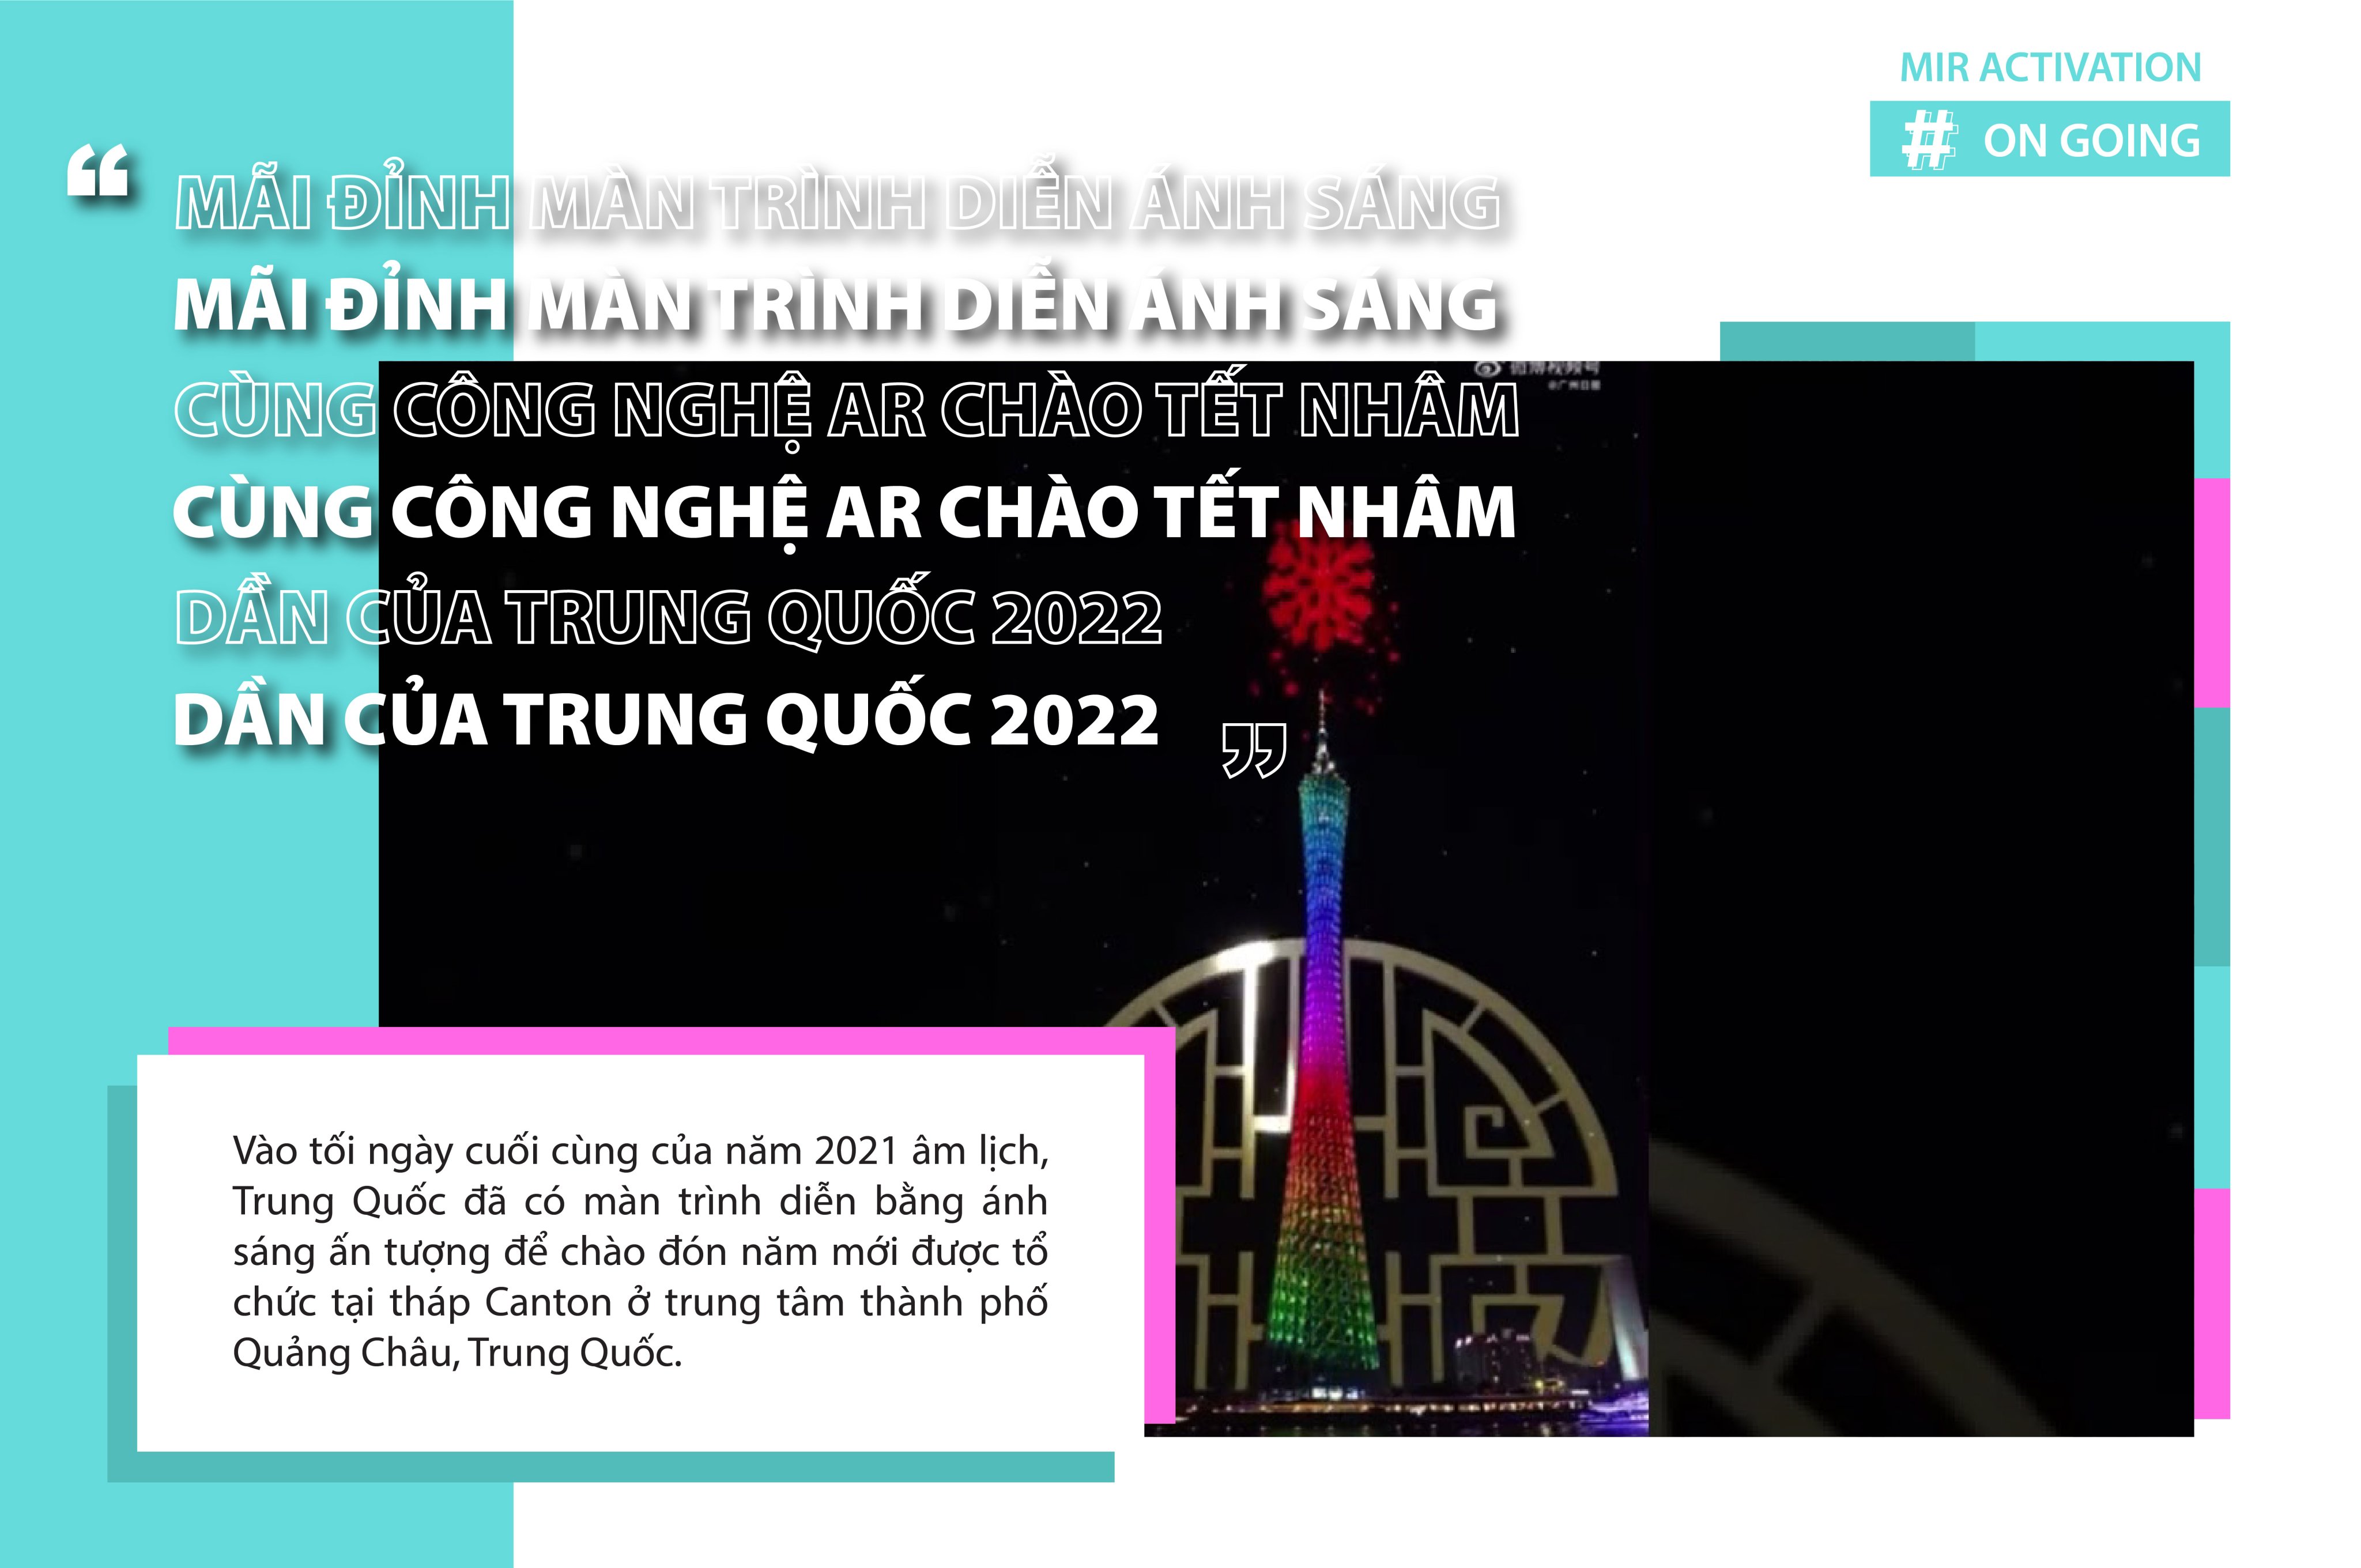 MÃI ĐỈNH MÀN TRÌNH DIỄN ÁNH SÁNG CÙNG CÔNG NGHỆ AR CHÀO TẾT NHÂM DẦN CỦA TRUNG QUỐC 2022